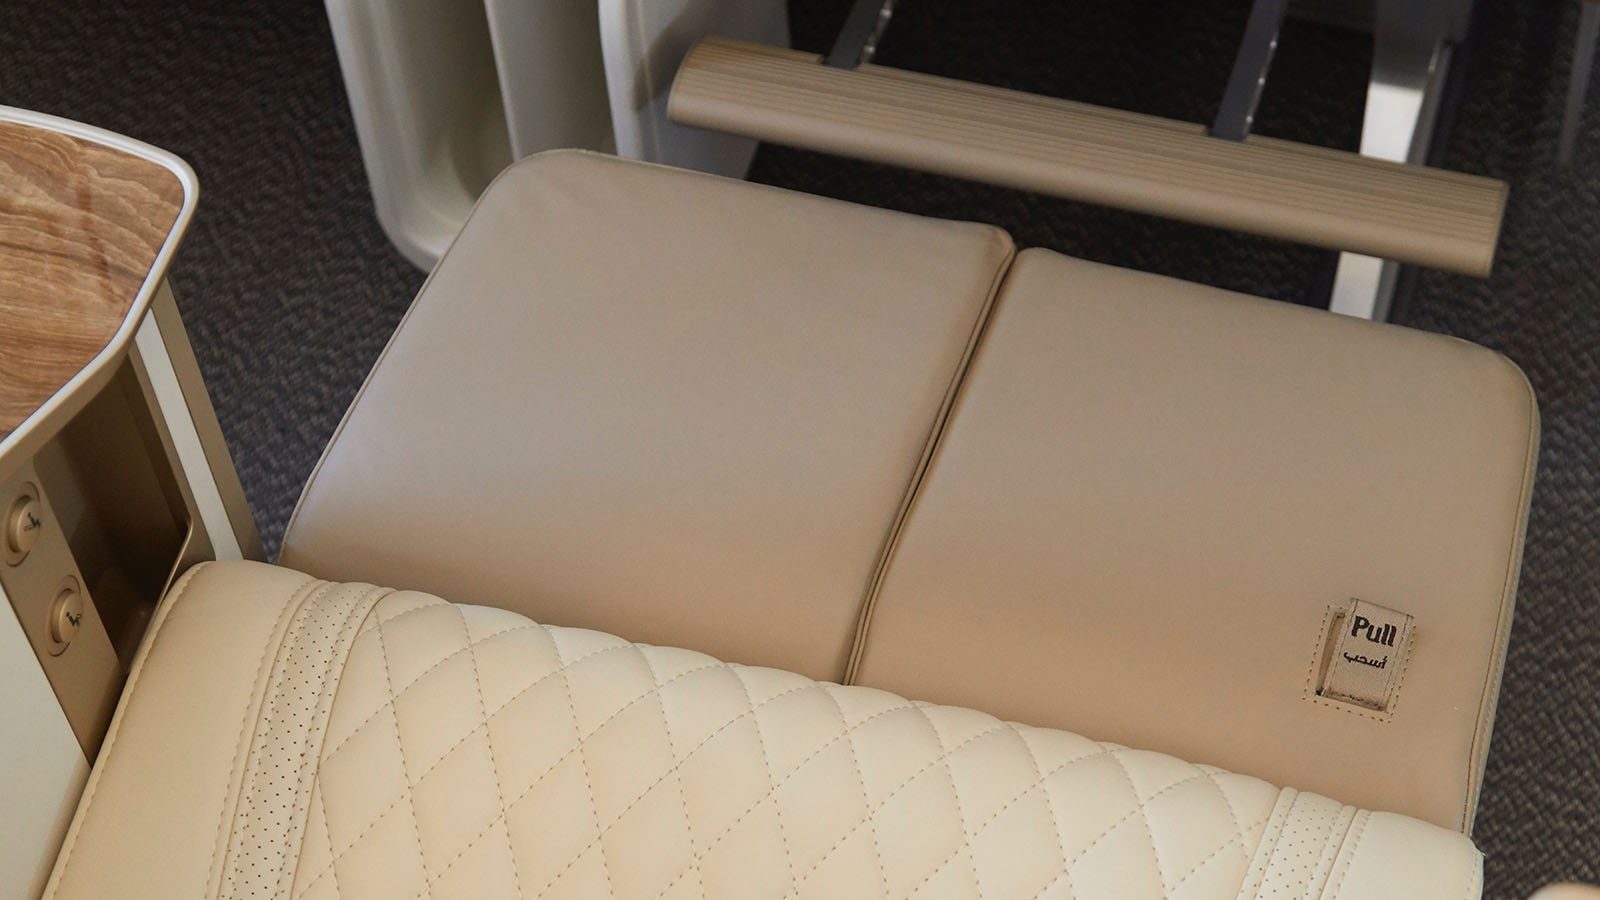 Emirates' Premium Economy Class seat